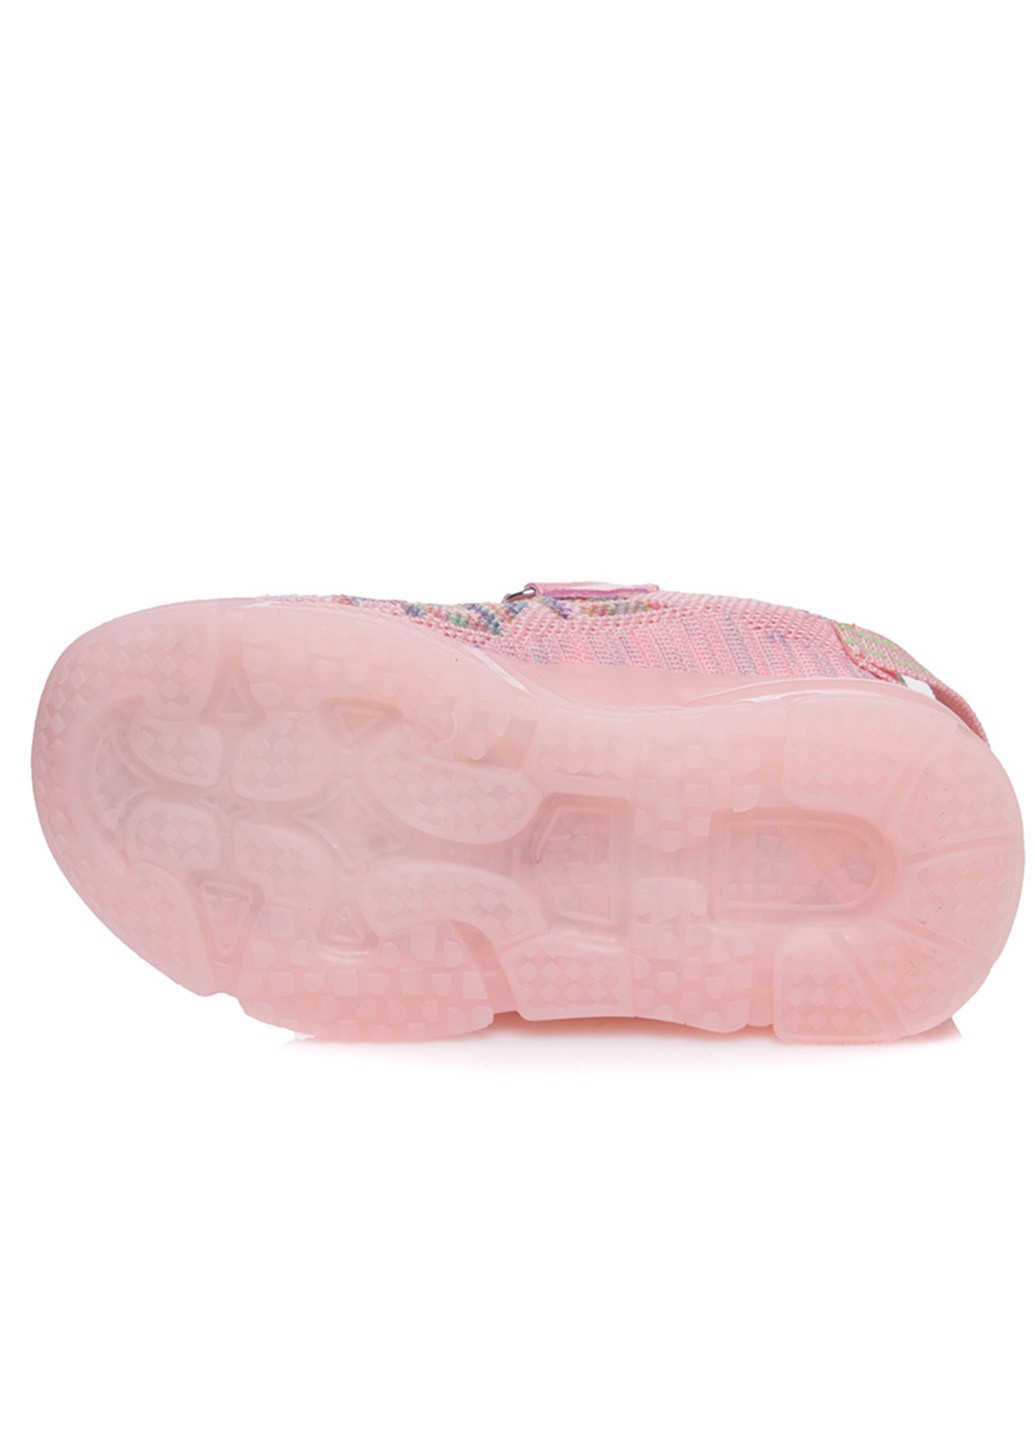 Розовые всесезонные детские кроссовки для девочки KidsMIX